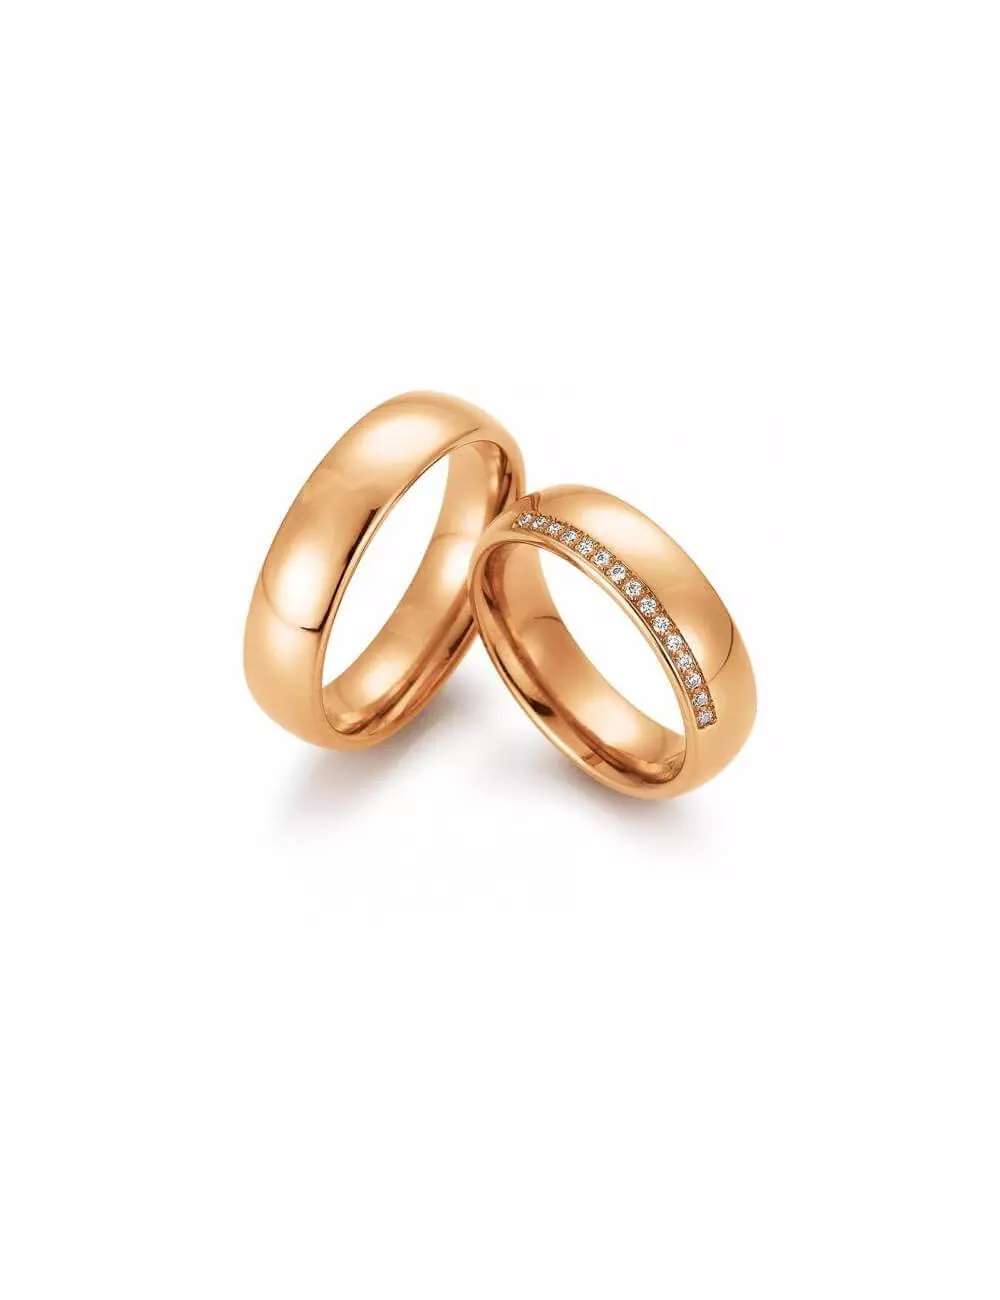 Klasikinis vestuvinis žiedas su deimantais - Švelnumas